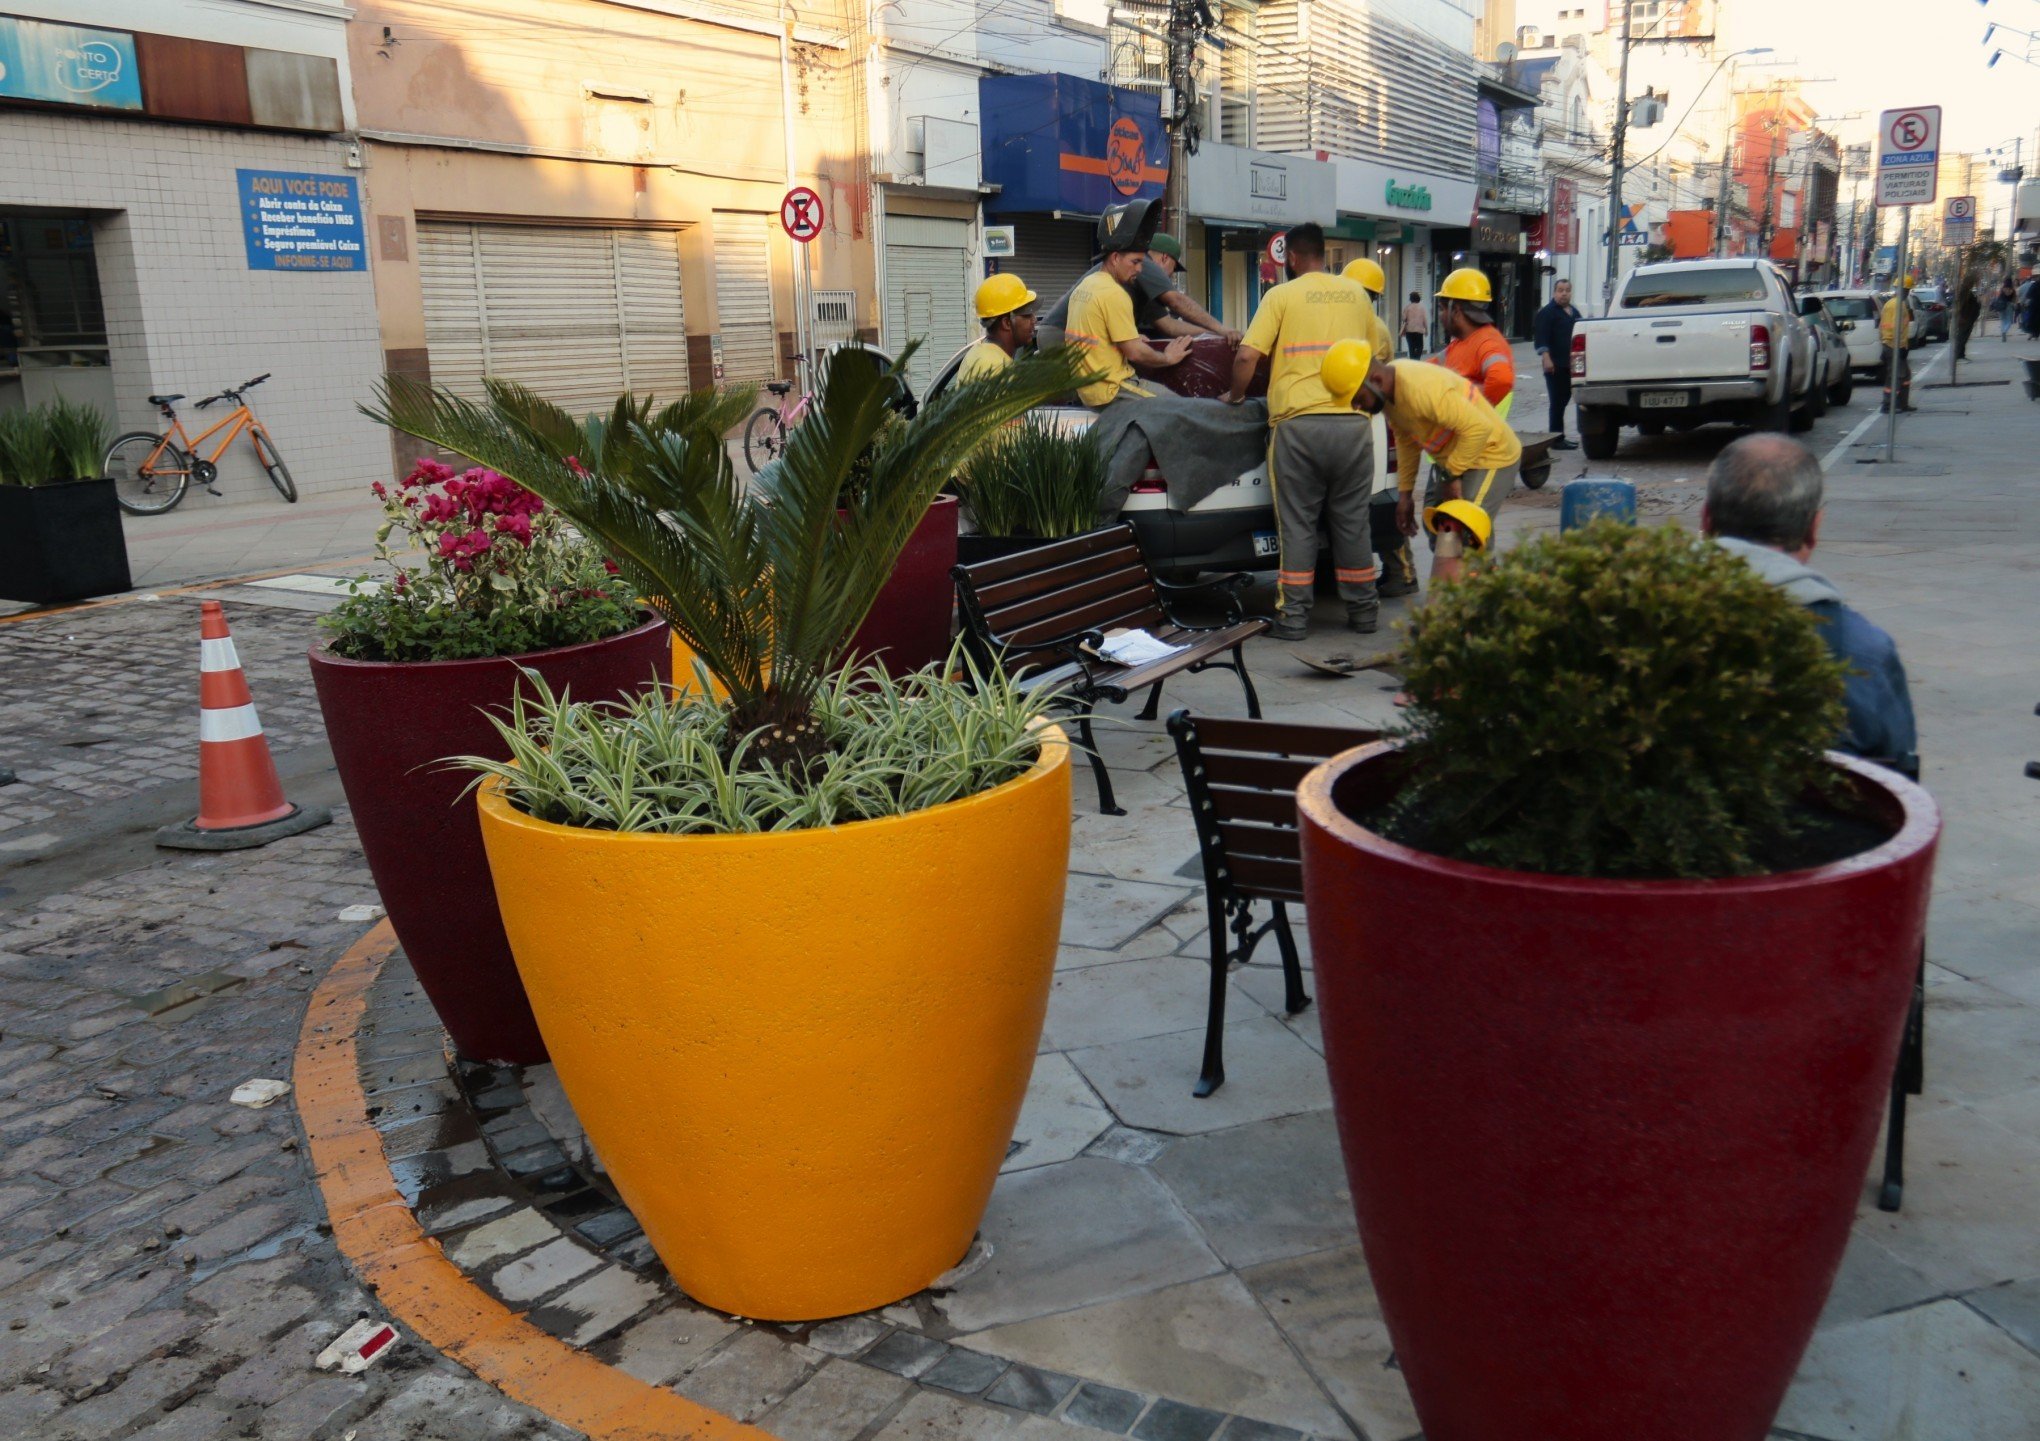 Trecho revitalizado da Rua Independência começa a receber plantas decorativas